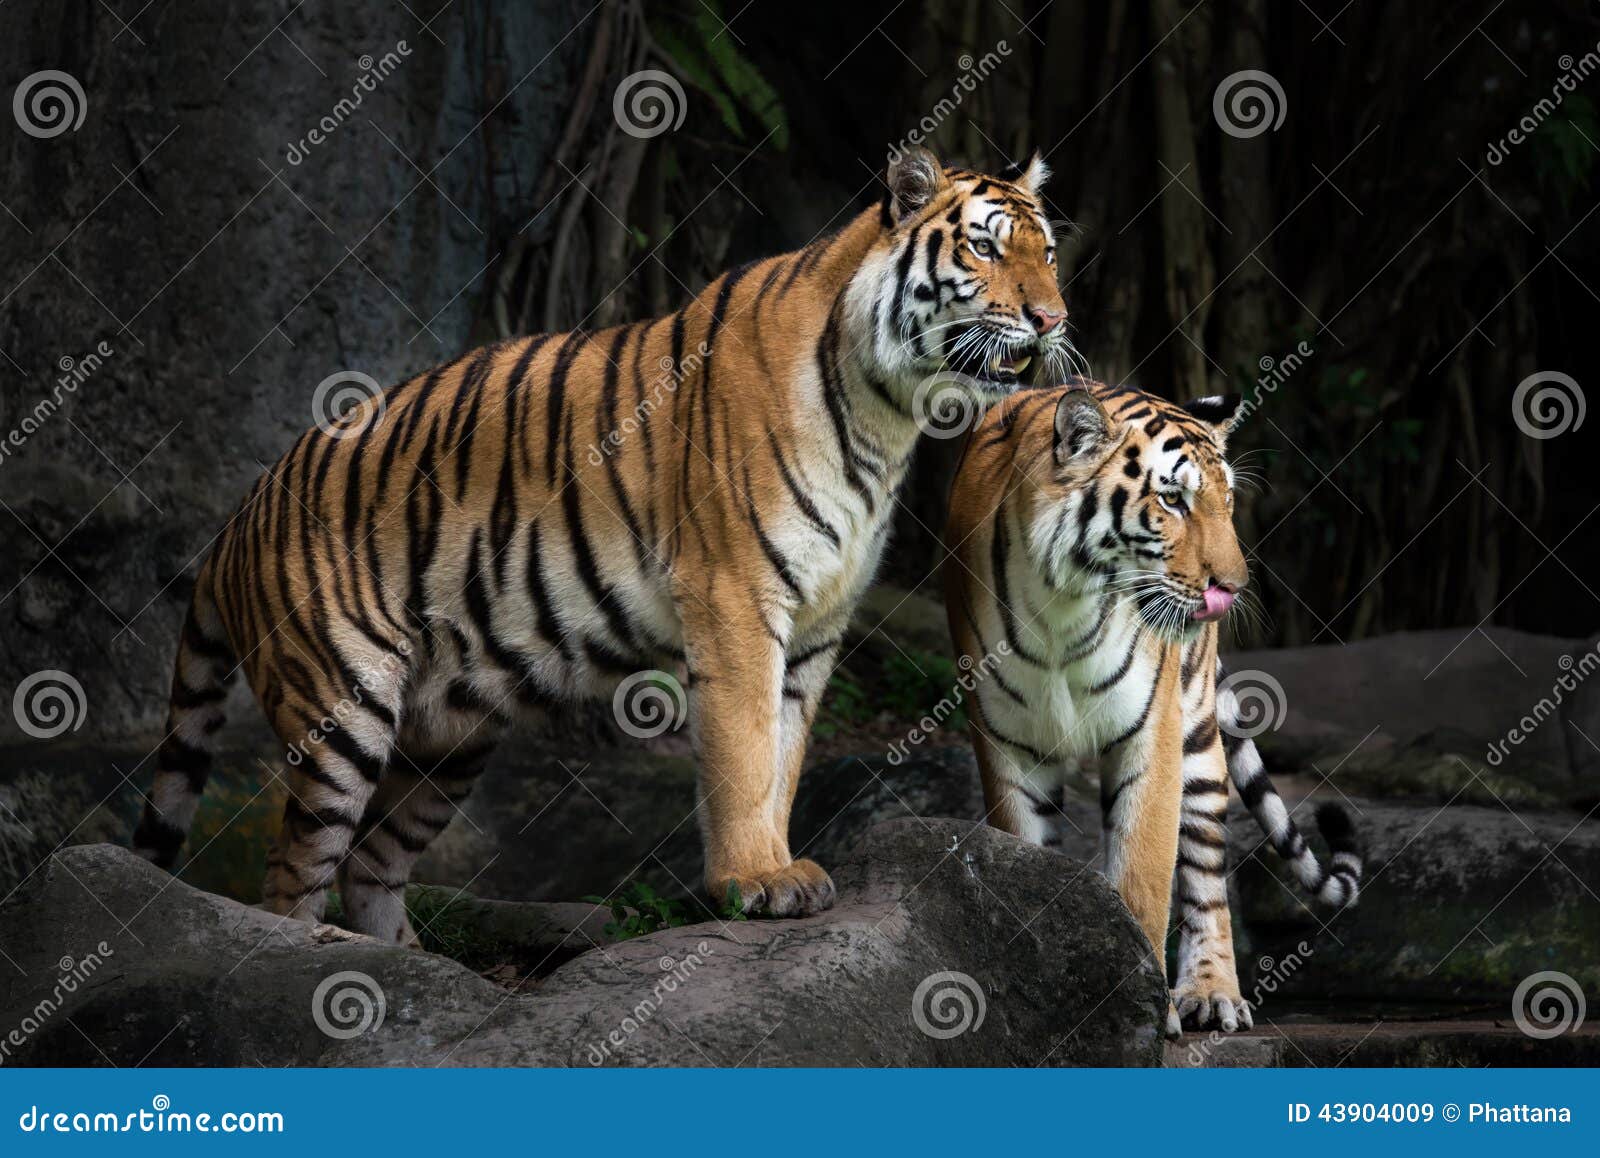 Royal Bengal Tiger Royalty-Free Stock Photography | CartoonDealer.com ...